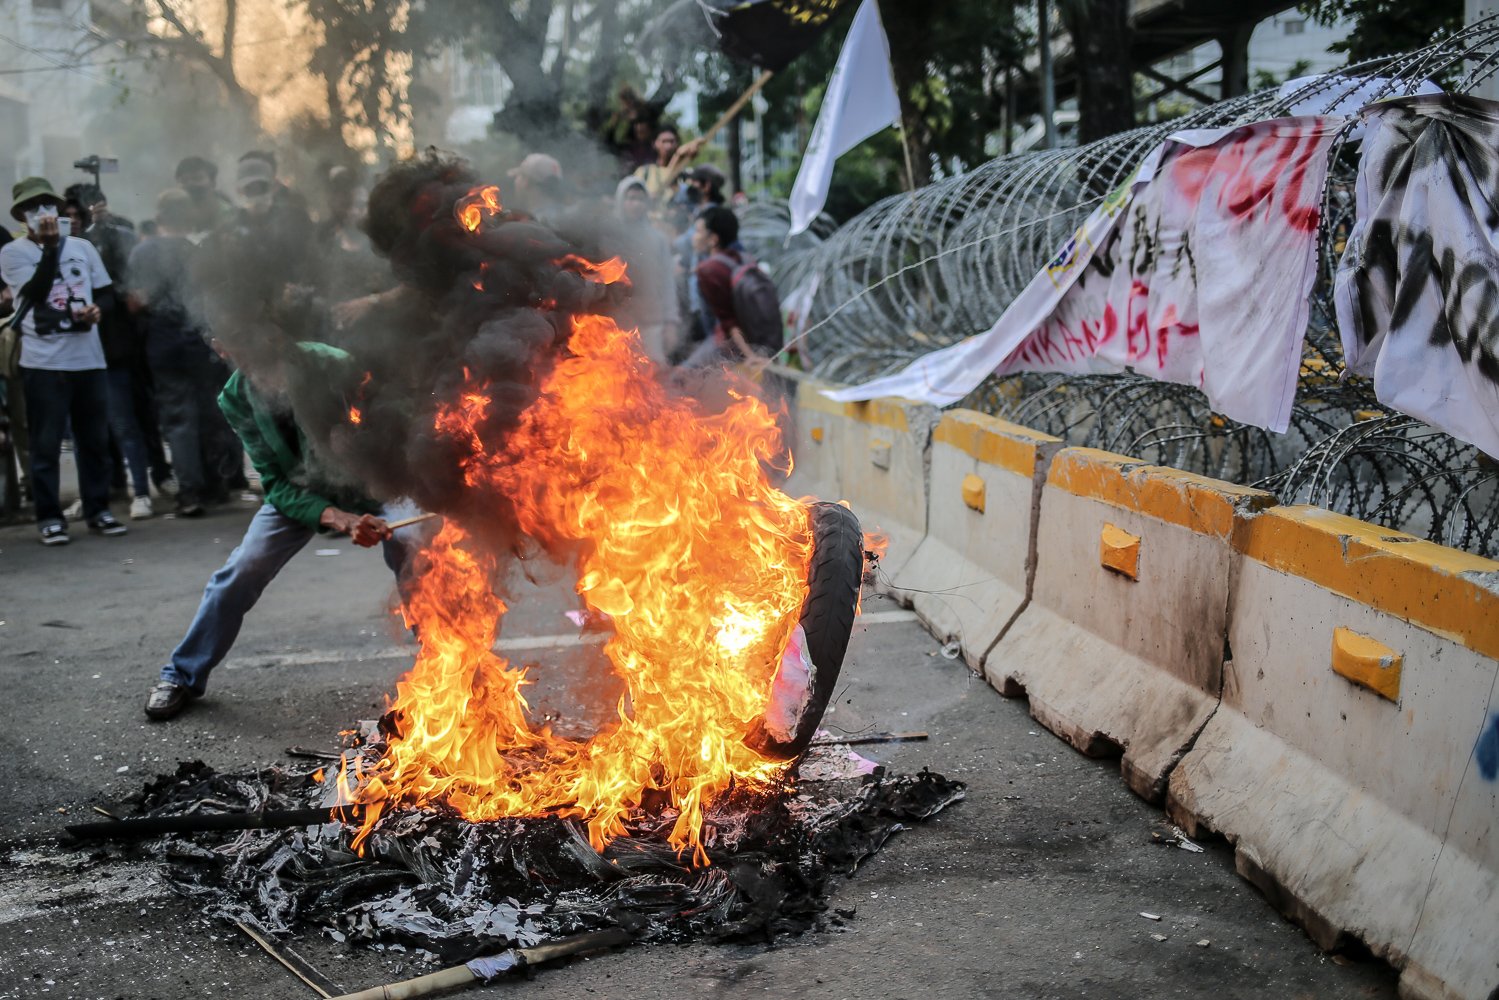 Pengunjuk rasa membakar ban saat aksi di kawasan Jalan Medan Merdeka Barat, Jakarta, Selasa (13/9). Pengunjuk rasa menolak kebijakan pemerintah yang menaikkan harga bahan bakar minyak (BBM) bersubsidi karena dinilai menyengsarakan rakyat.